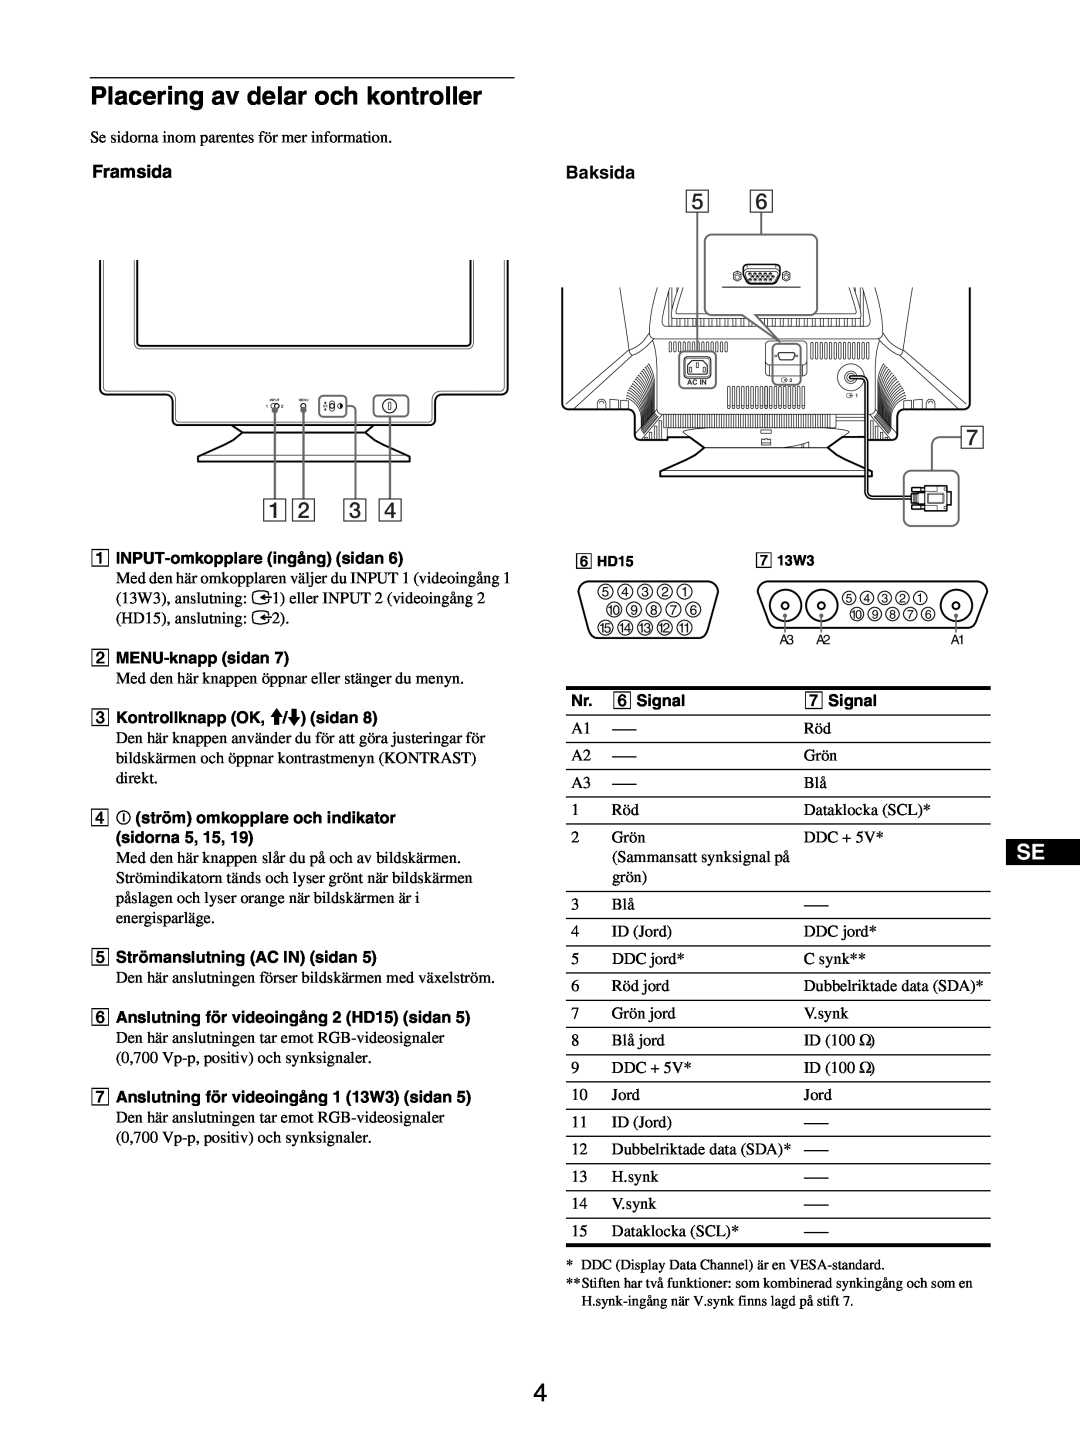 Sony GDM-5510 operating instructions Placering av delar och kontroller, 12 3, Framsida, Baksida 